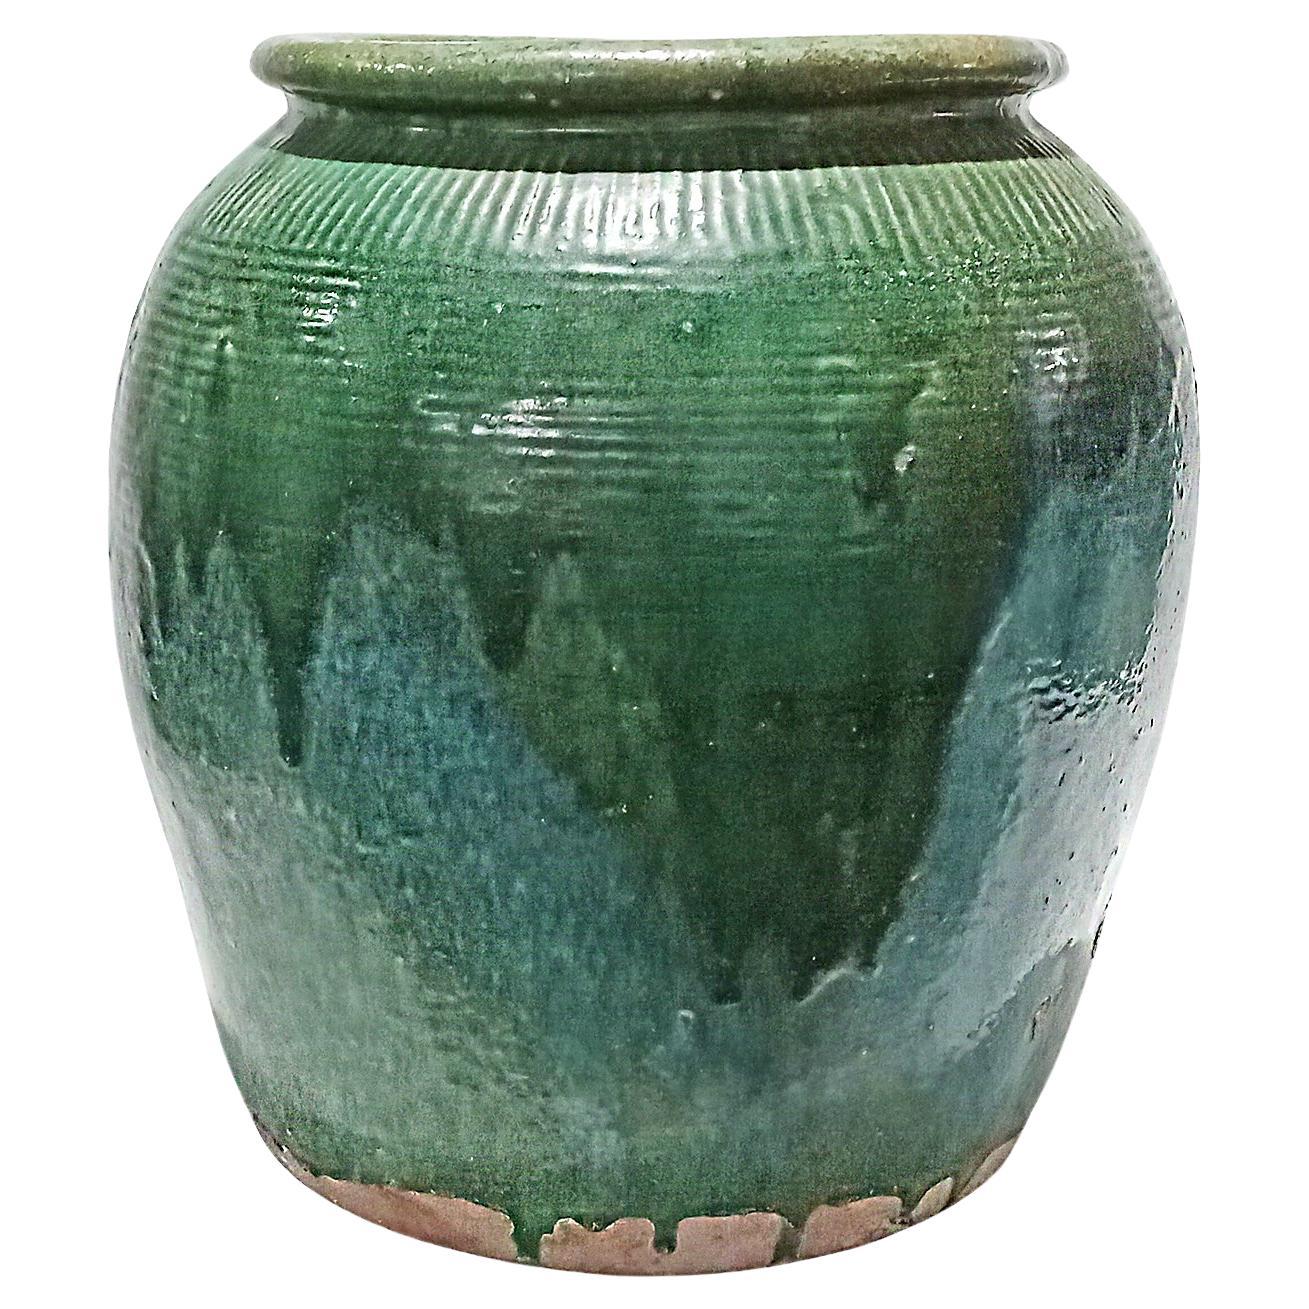 Vase / JAR / Urne balinais en terre cuite à glaçure verte, contemporain